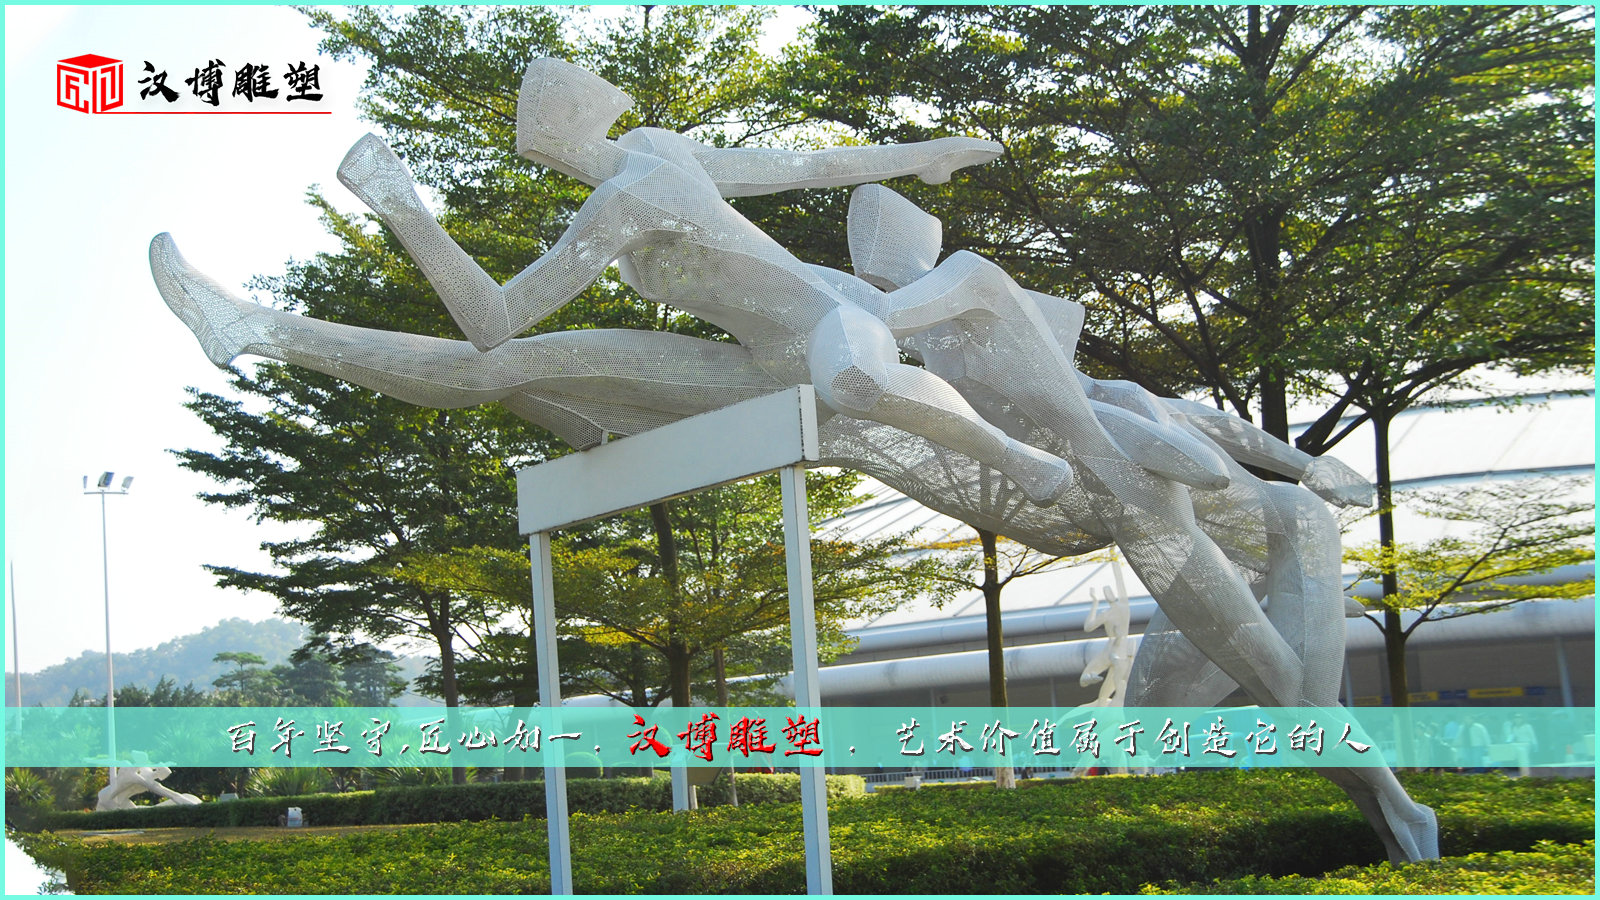 跨栏运动雕像,人物雕塑,户外景观雕塑